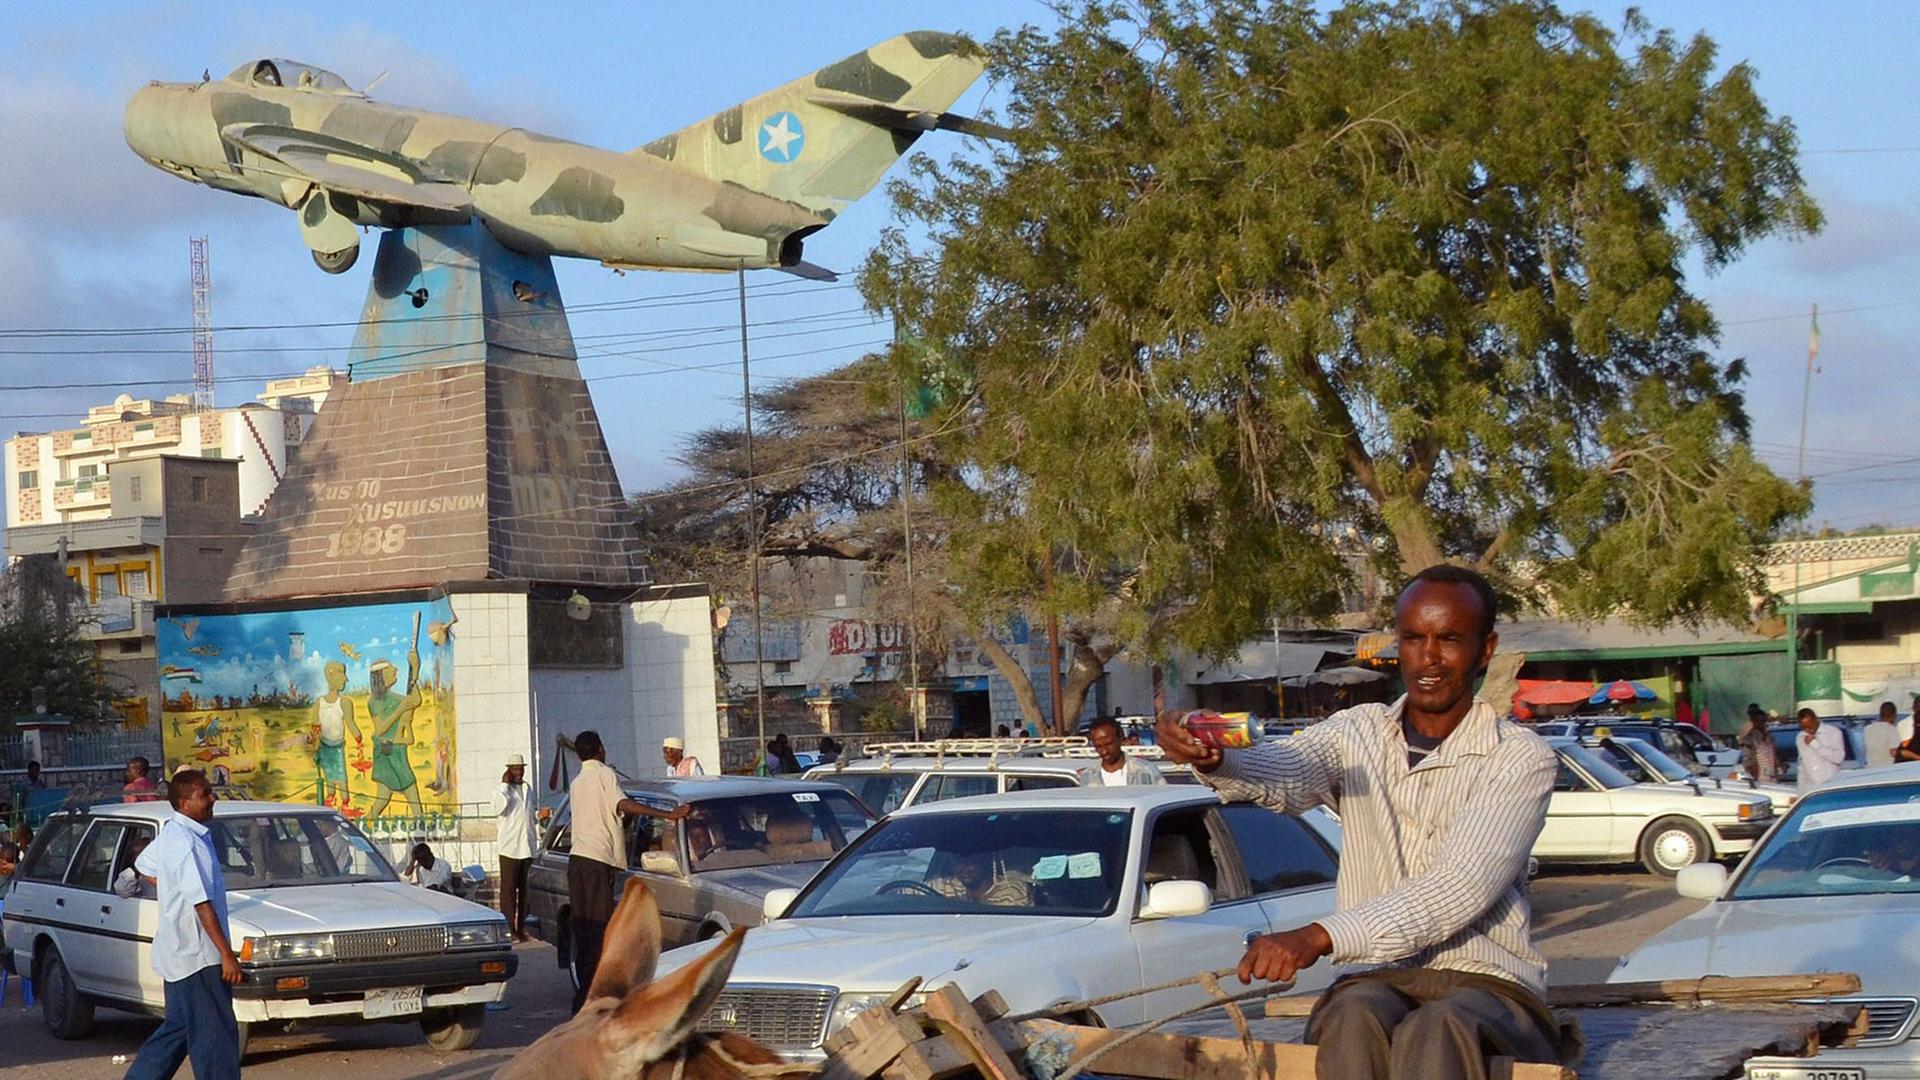 Die somalische Hauptstadt Hargeisa. Die Ein Mann sitzt auf einem Esel und reitet durch eine befahrene Straße.